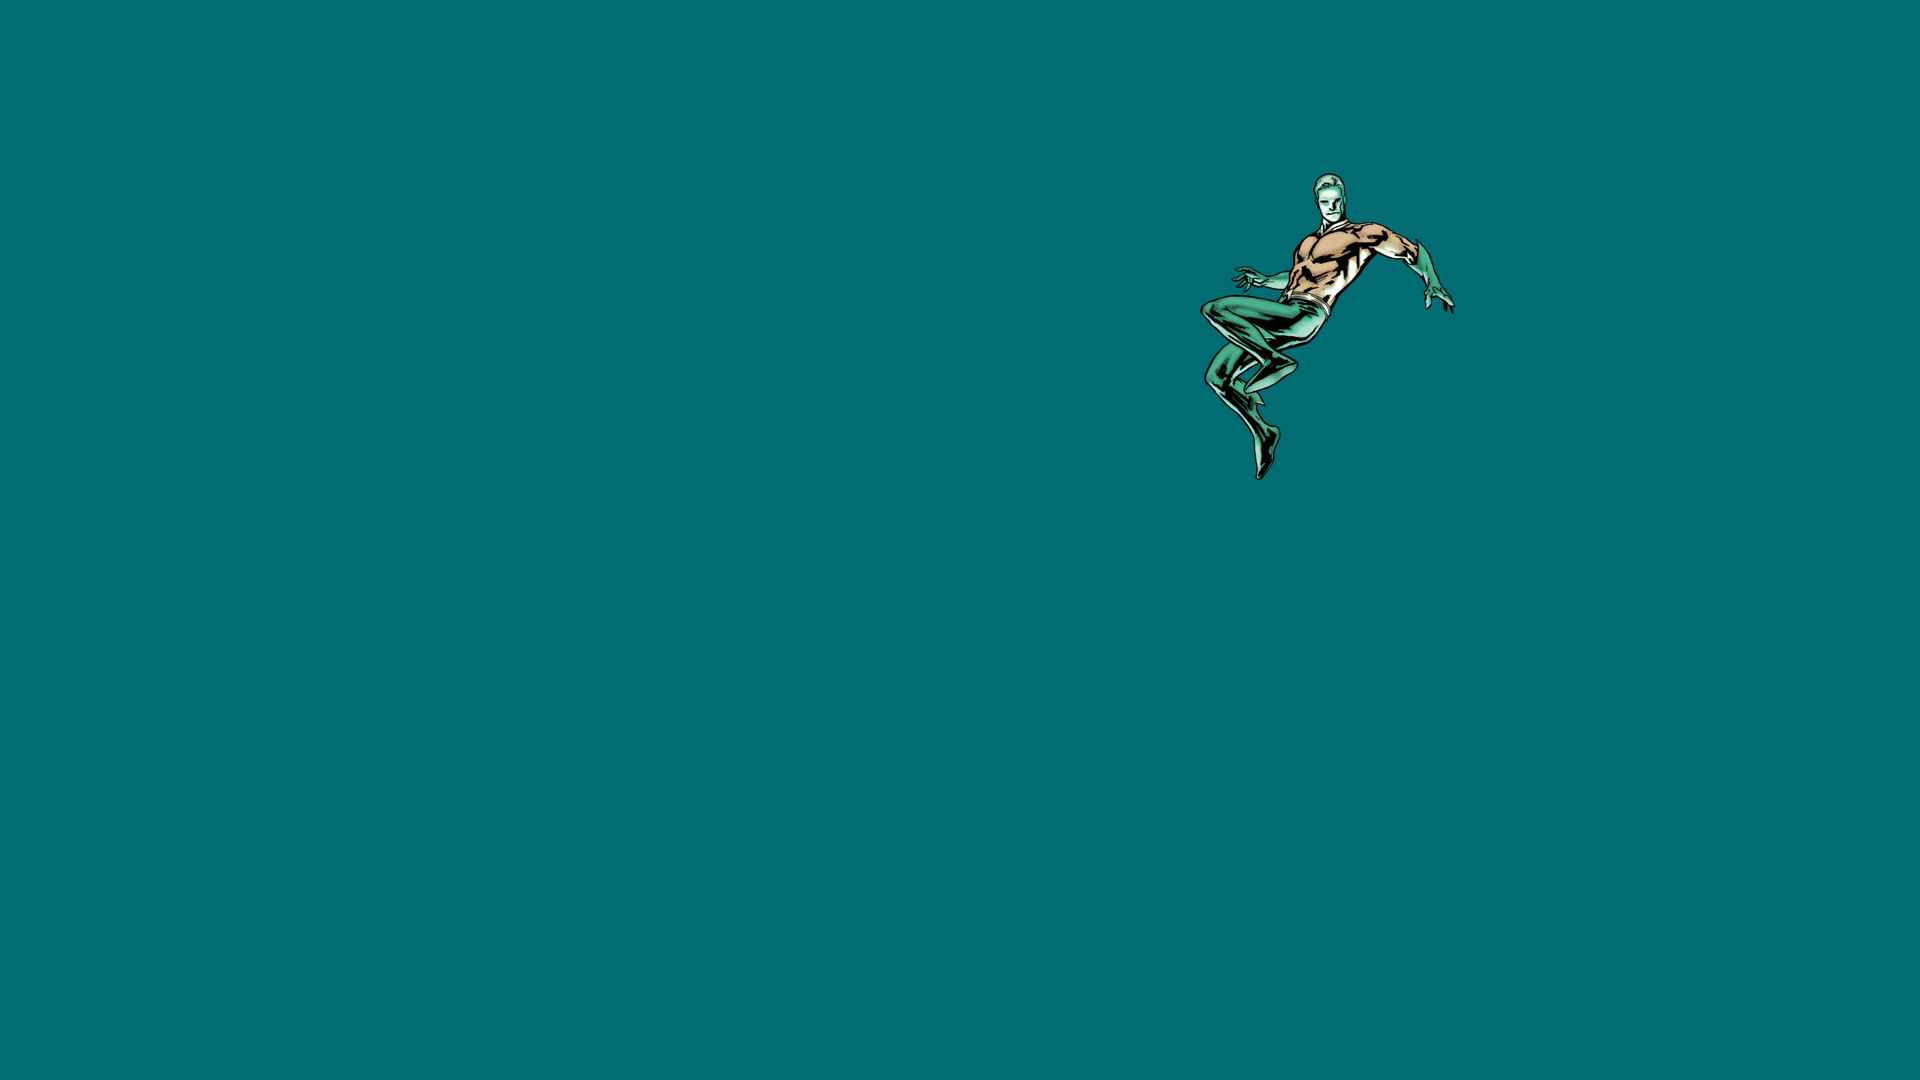 Aquaman Computer Wallpaper, Desktop Background 1920x1080 Id: 391500